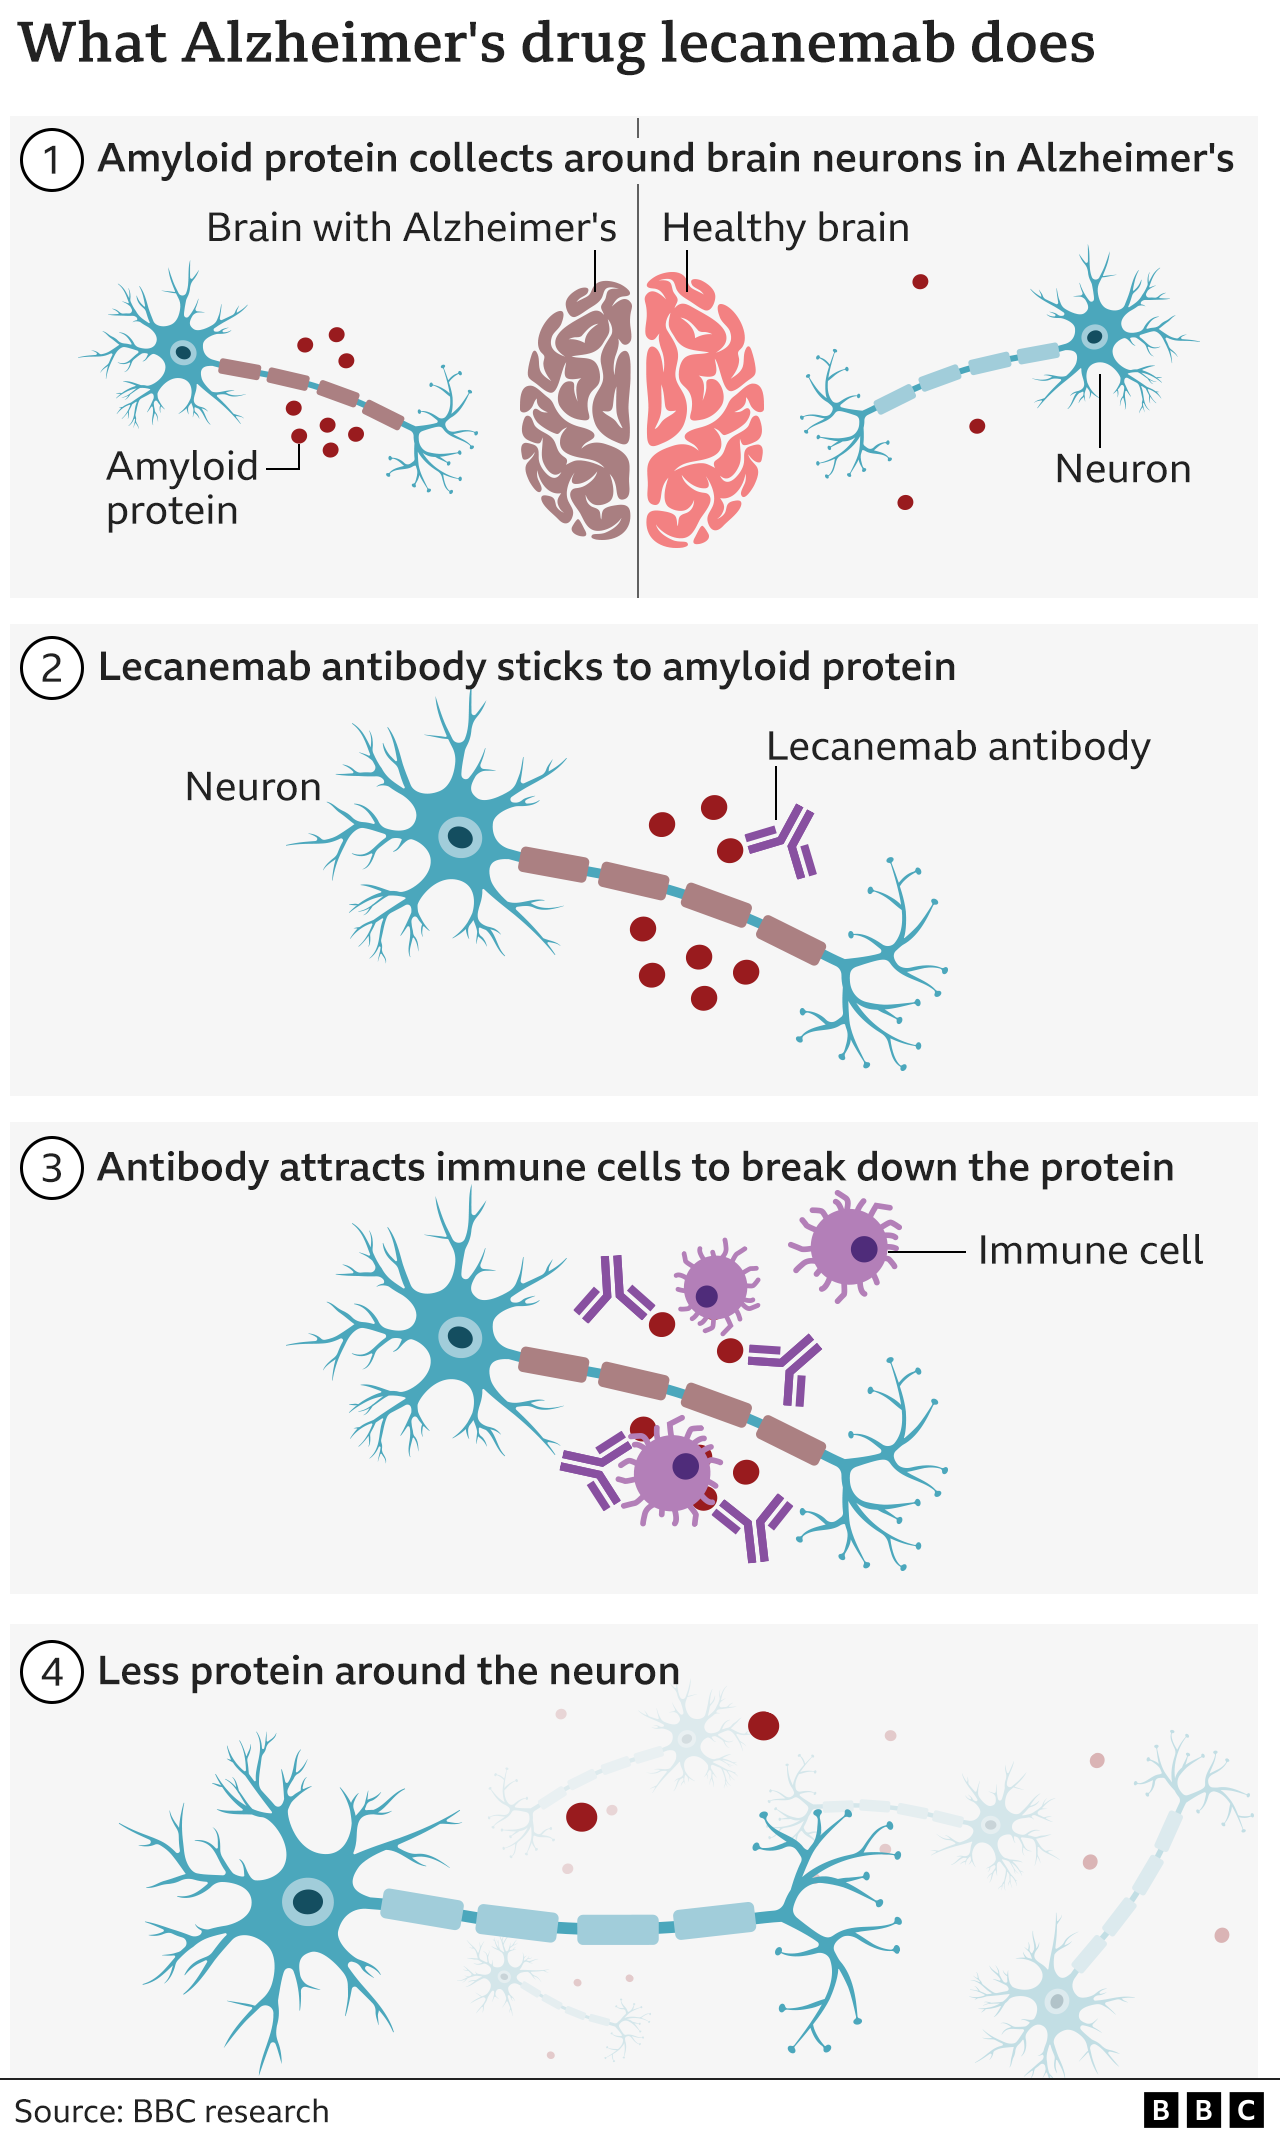 Grafik, die zeigt, wie der Lecanemab-Antikörper wirkt - er heftet sich an die ameloiden Proteine, die in von Alzheimer betroffenen Gehirnen häufiger vorkommen als in gesunden Gehirnen, und zieht dann die Immunzellen des Körpers an, die das Protein abbauen